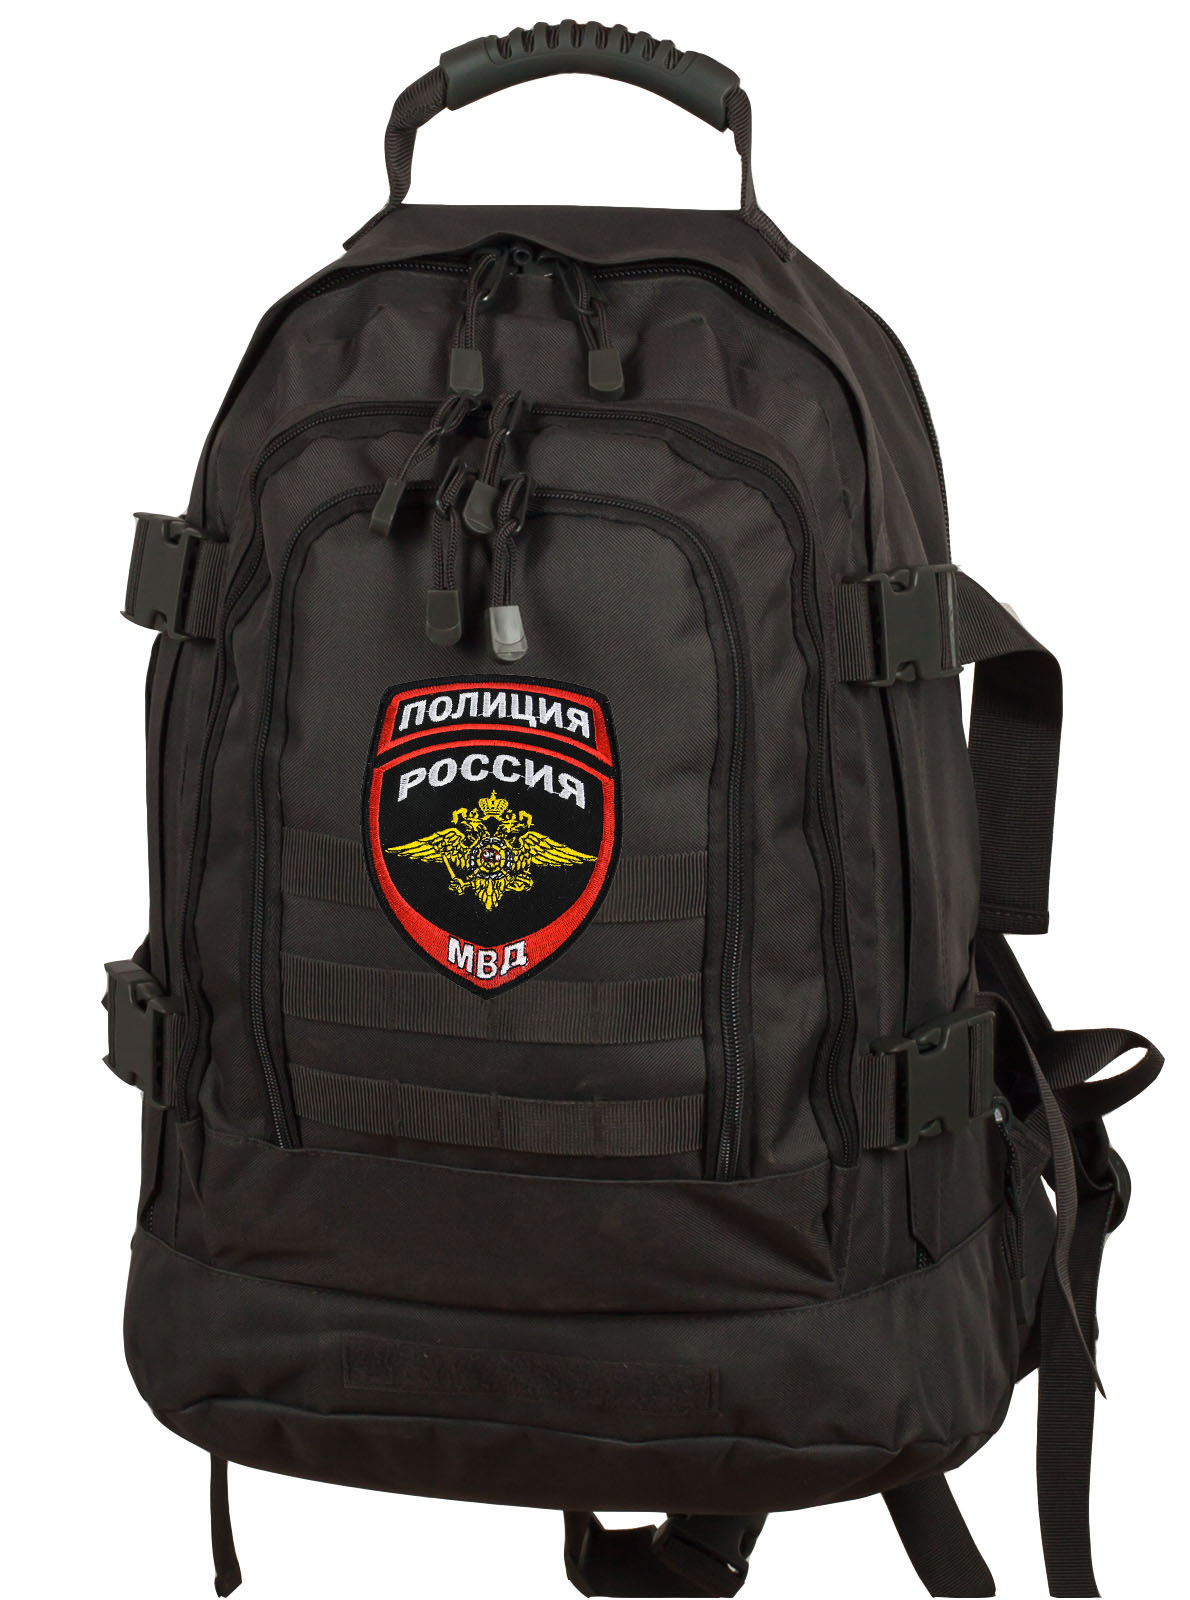 Купить армейский универсальный рюкзак с нашивкой Полиция России с доставкой онлайн